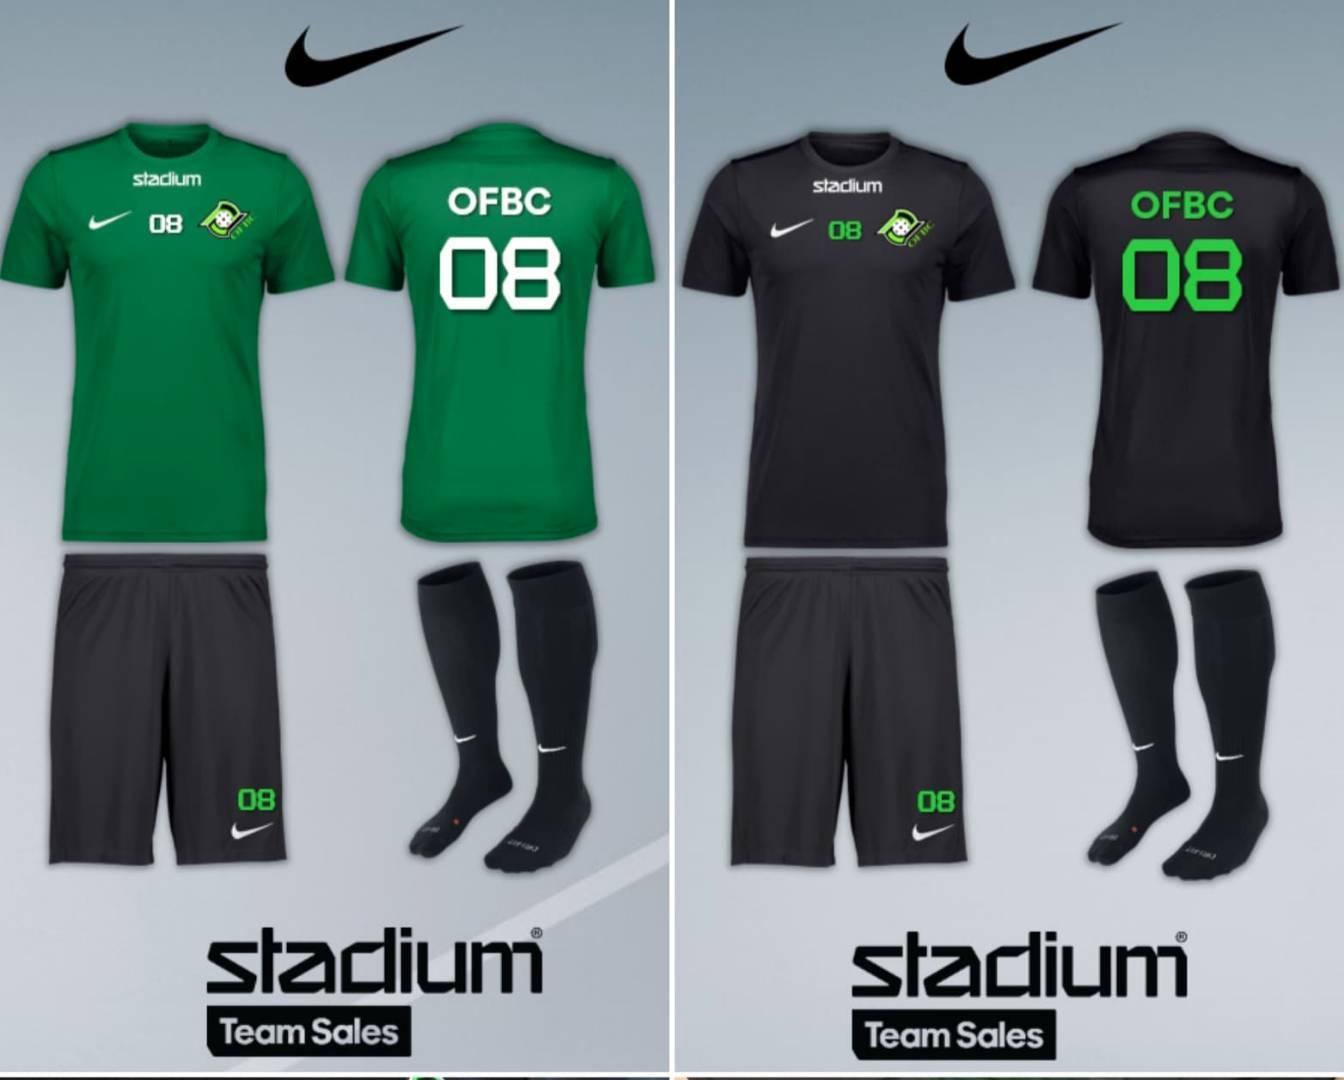 Stadium ja Nike yhteistyö jatkuu - peliasut uudistuvat